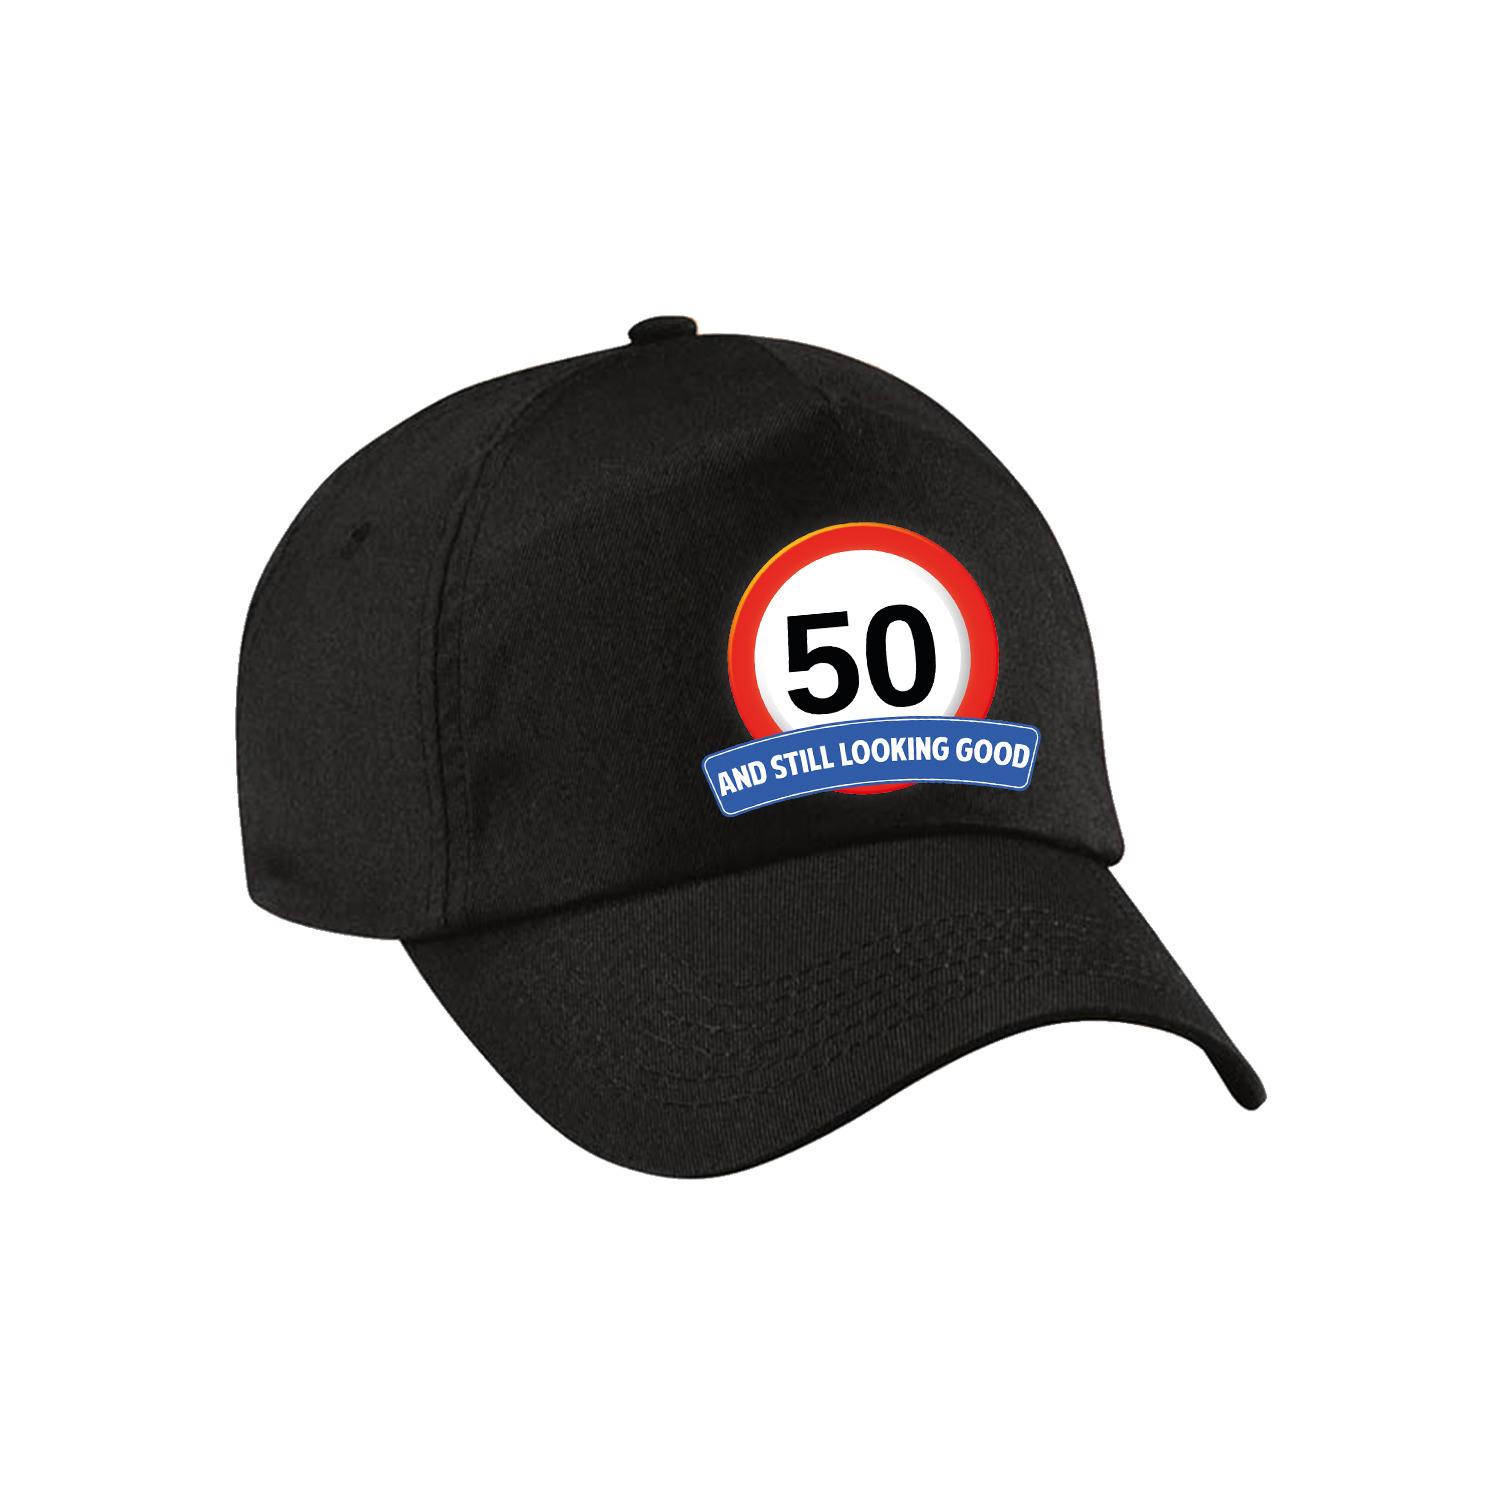 50 and still looking good stopbord pet-cap zwart voor volwassenen